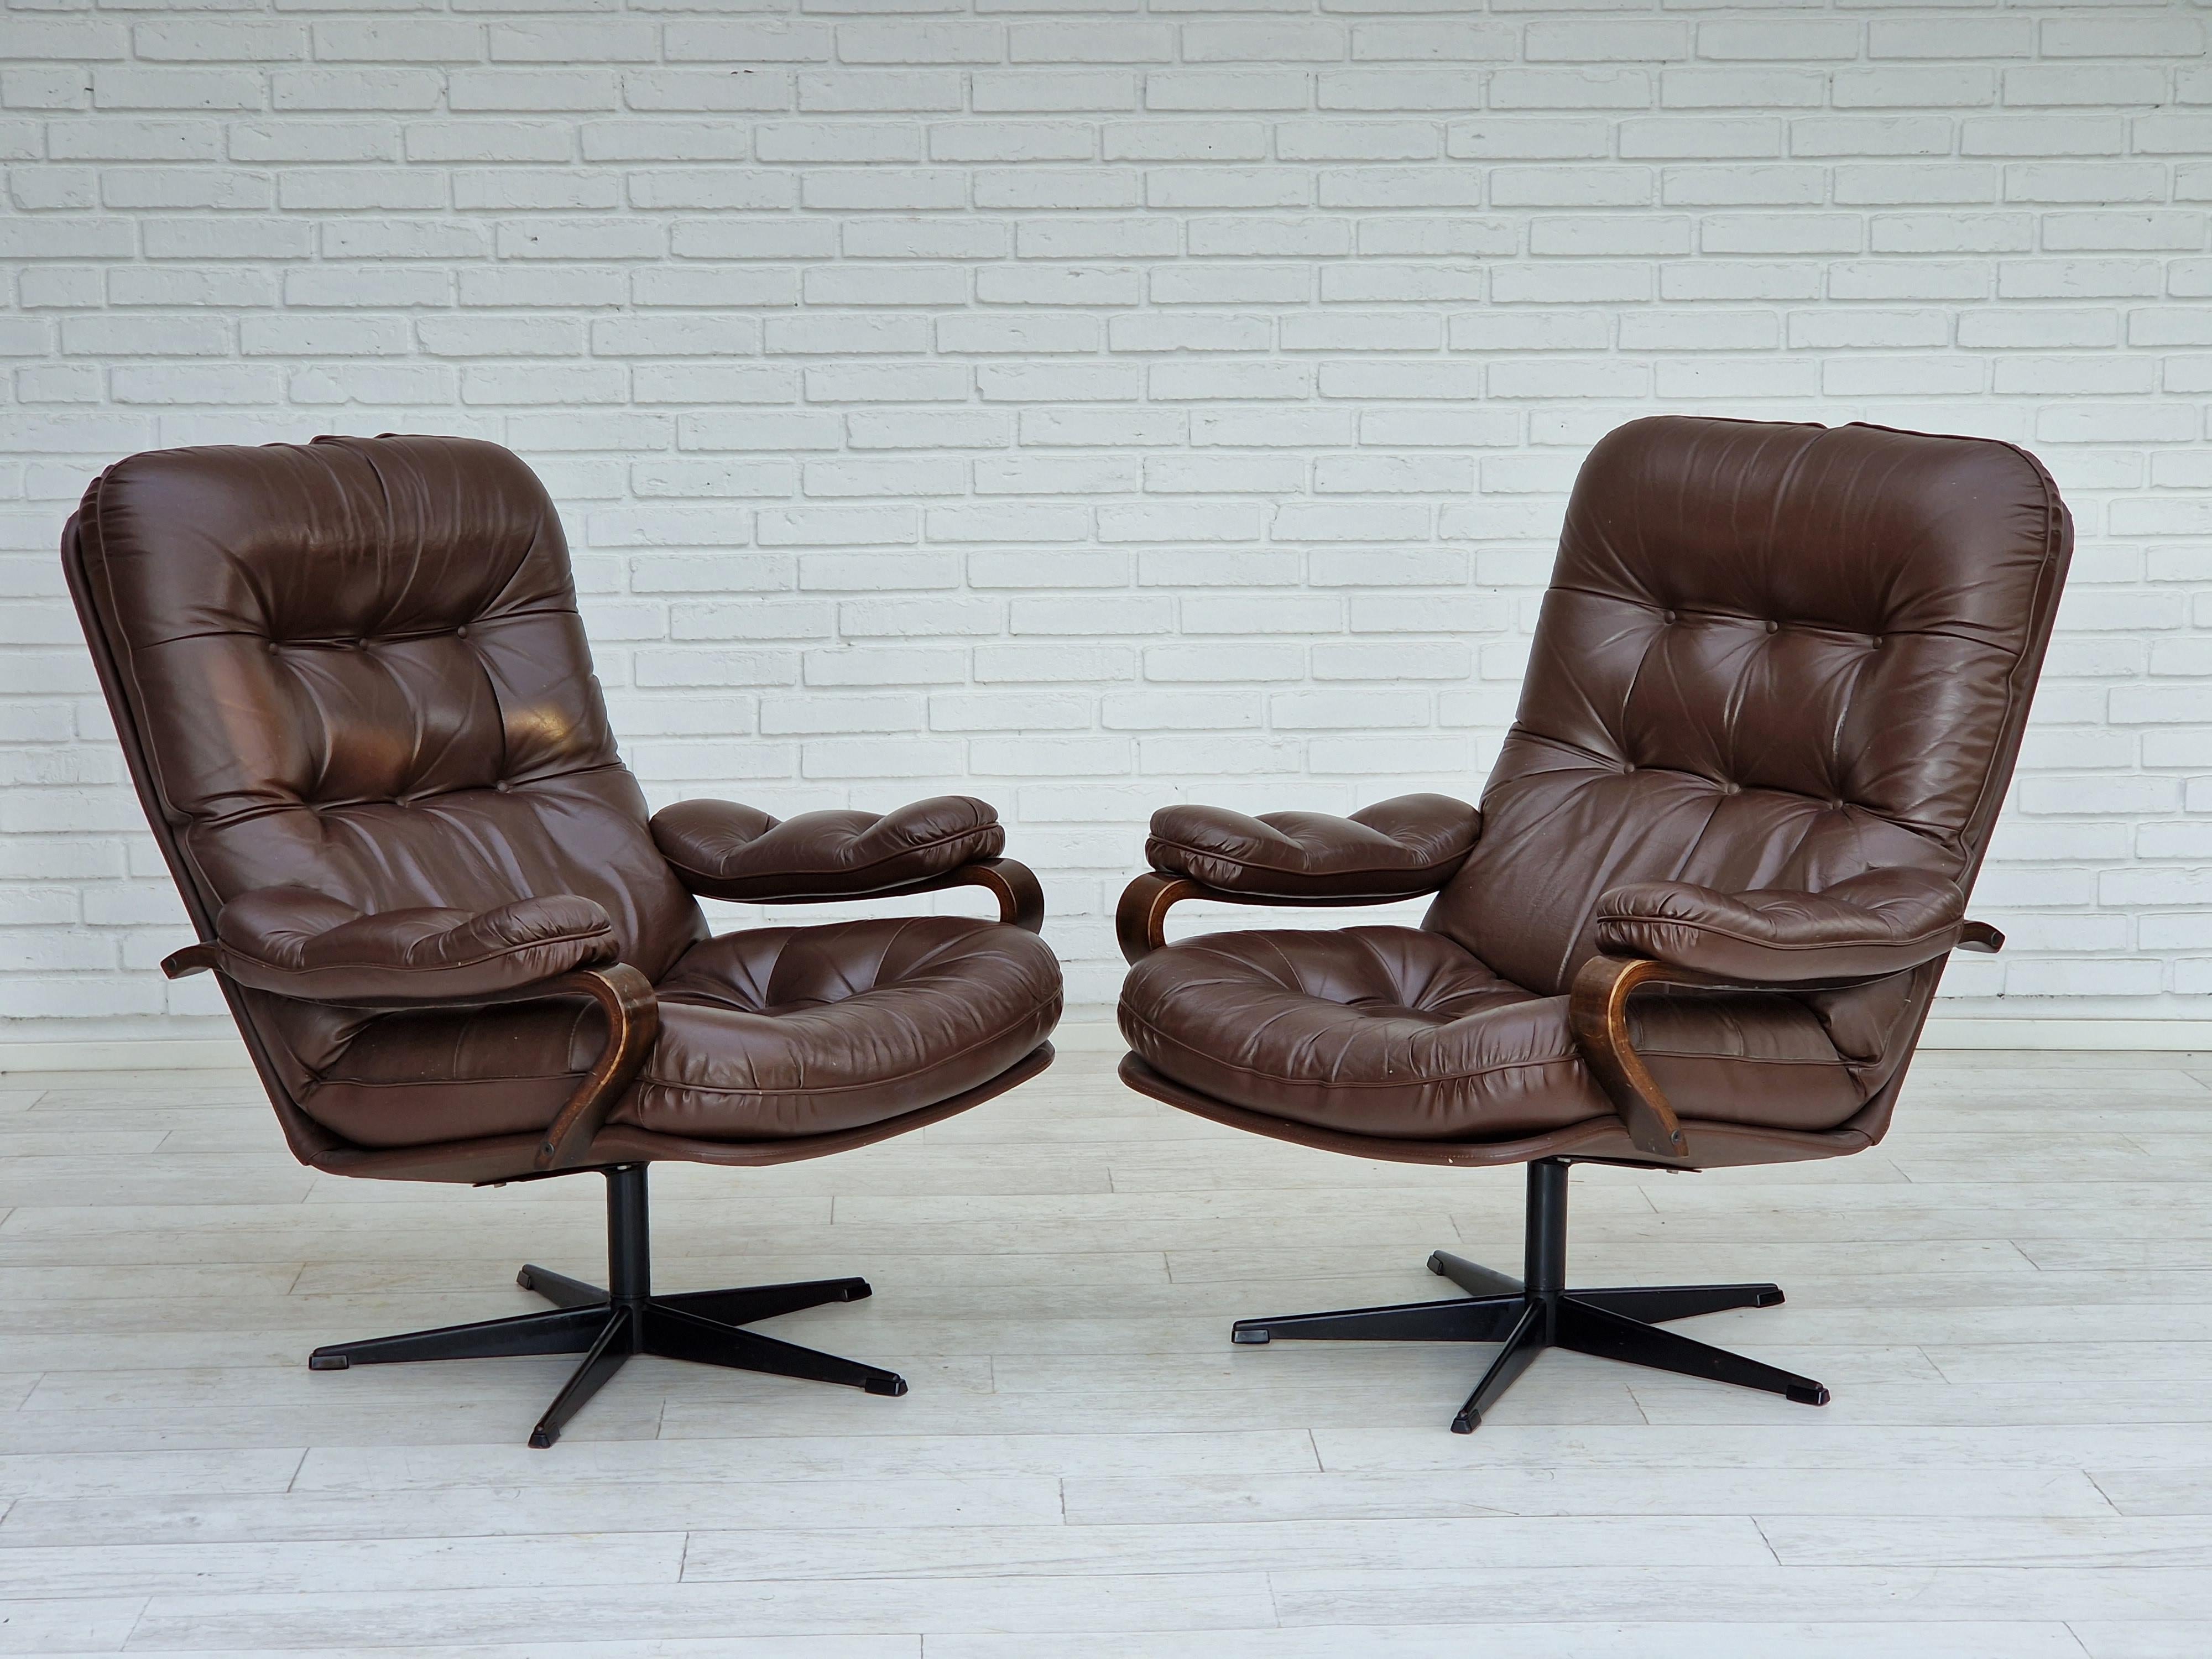 Années 1970, Design/One. Paire de fauteuils pivotants en cuir brun. Bon état : pas d'odeurs ni de taches. Pied d'acier.